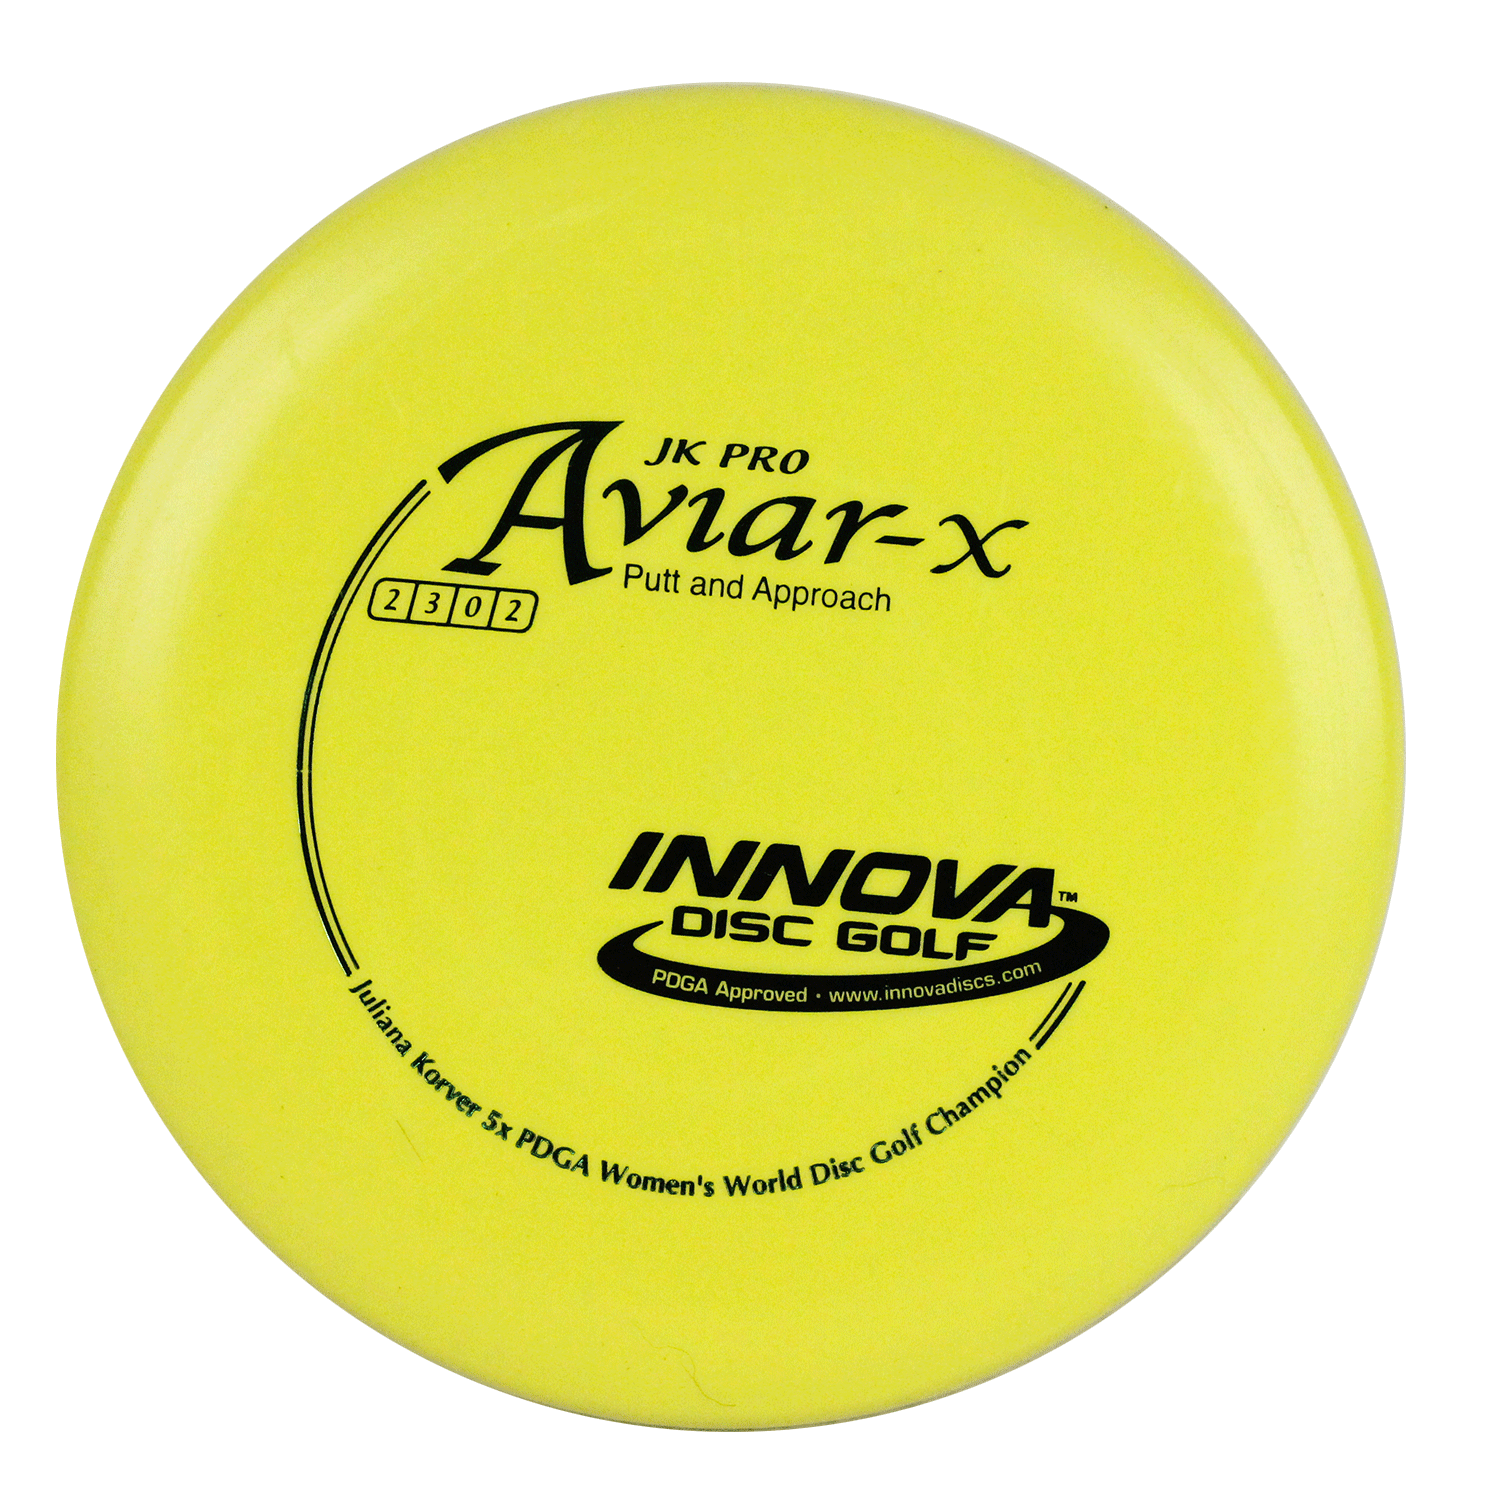 Innova Disc Golf Putter Pro Aviar-X JK